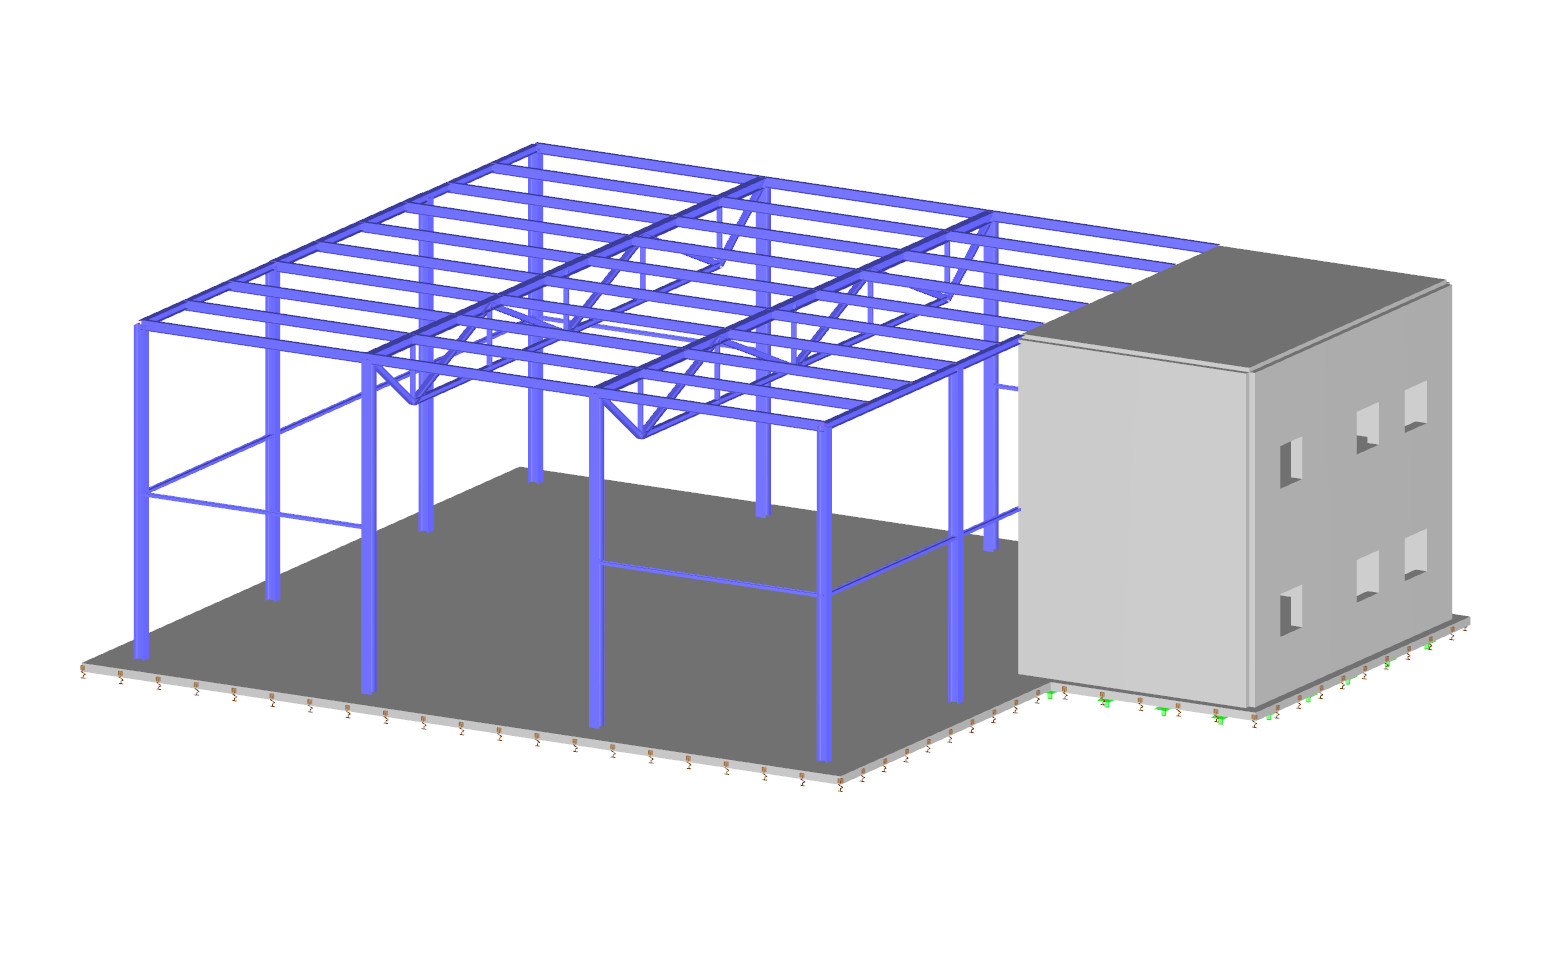 Sala in acciaio 3D con estensione in cemento armato